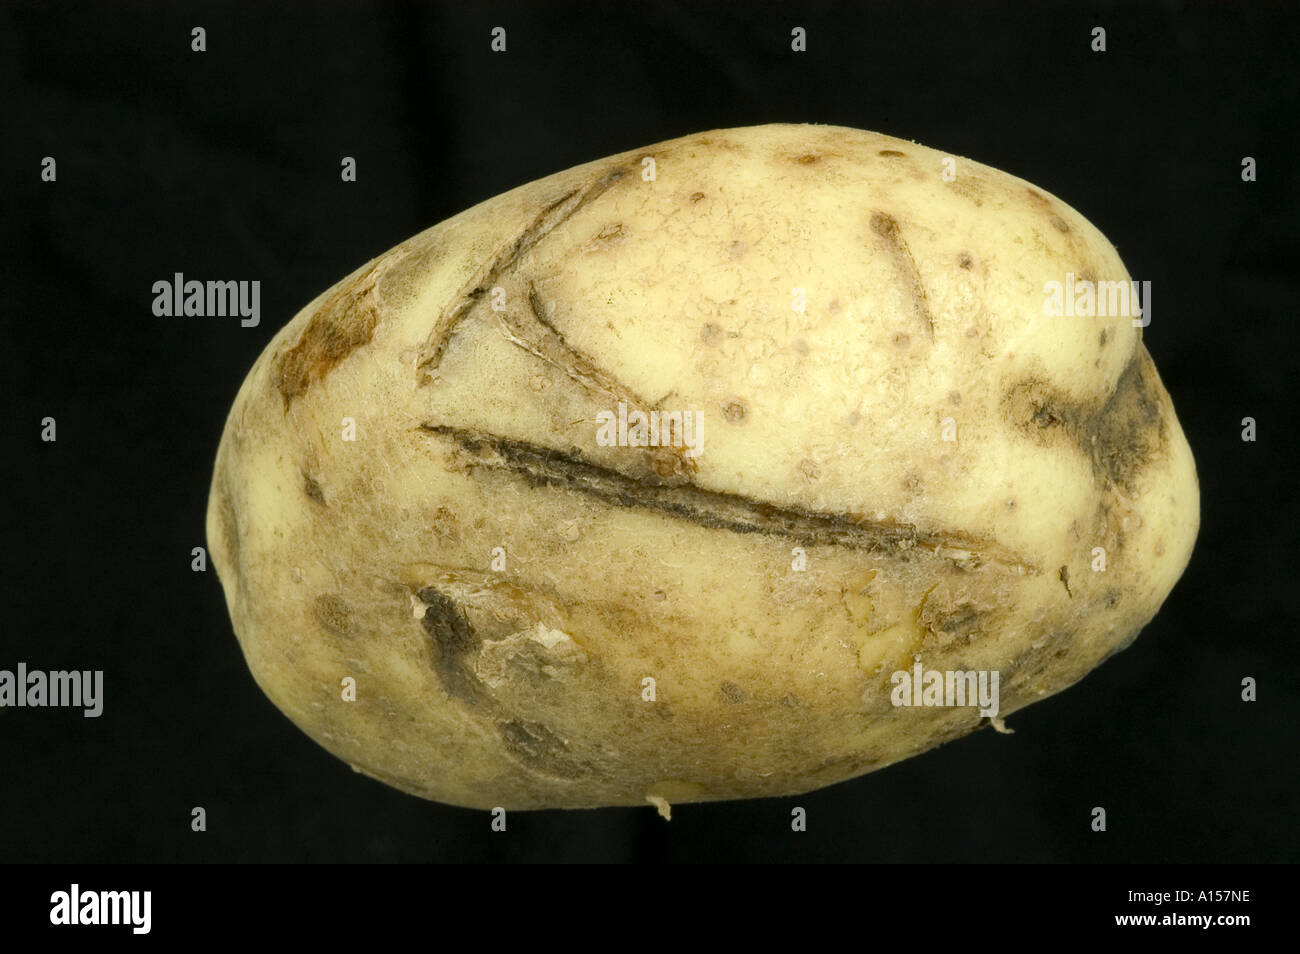 Schneiden Sie oder Spaten Sie Schaden Marken in Kartoffel-Knolle-Oberfläche Stockfoto